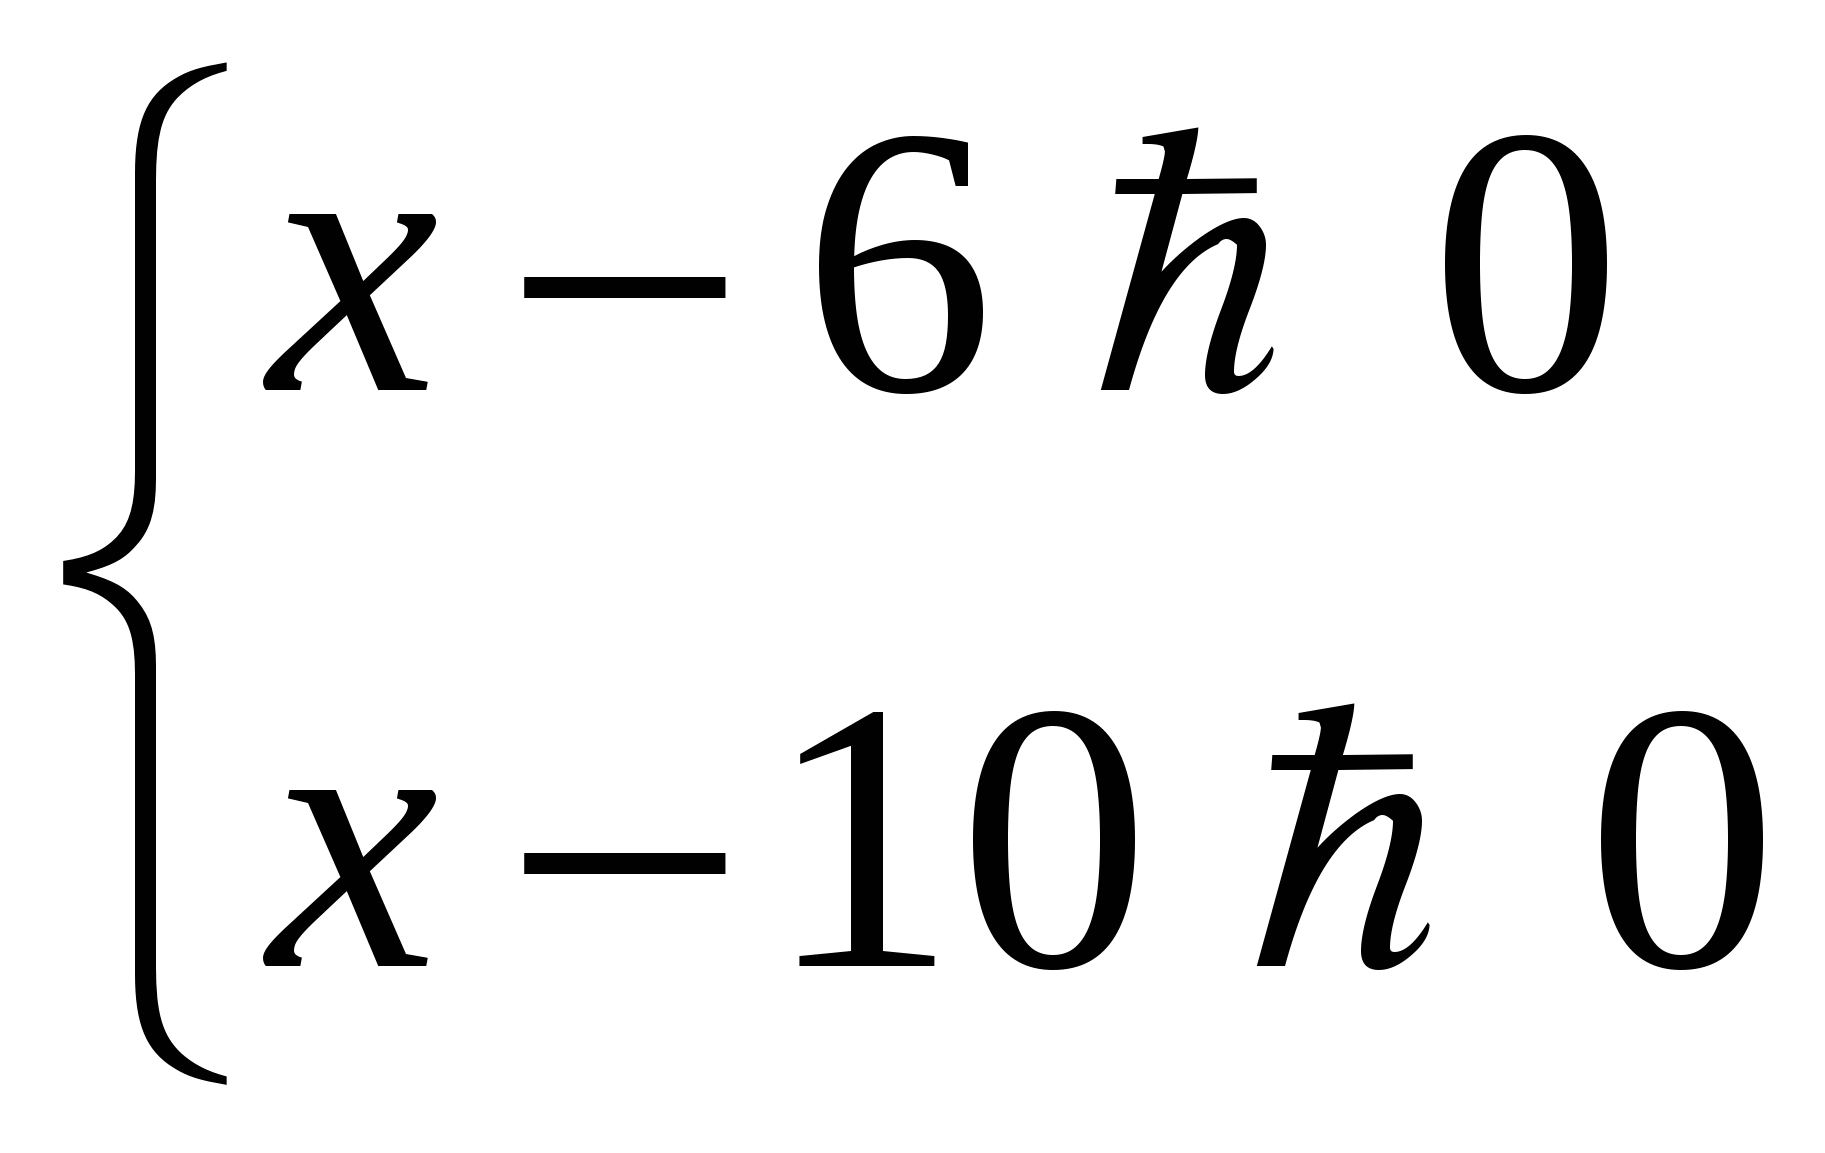 Методическая разработка урока по математике Логарифмические уравнения